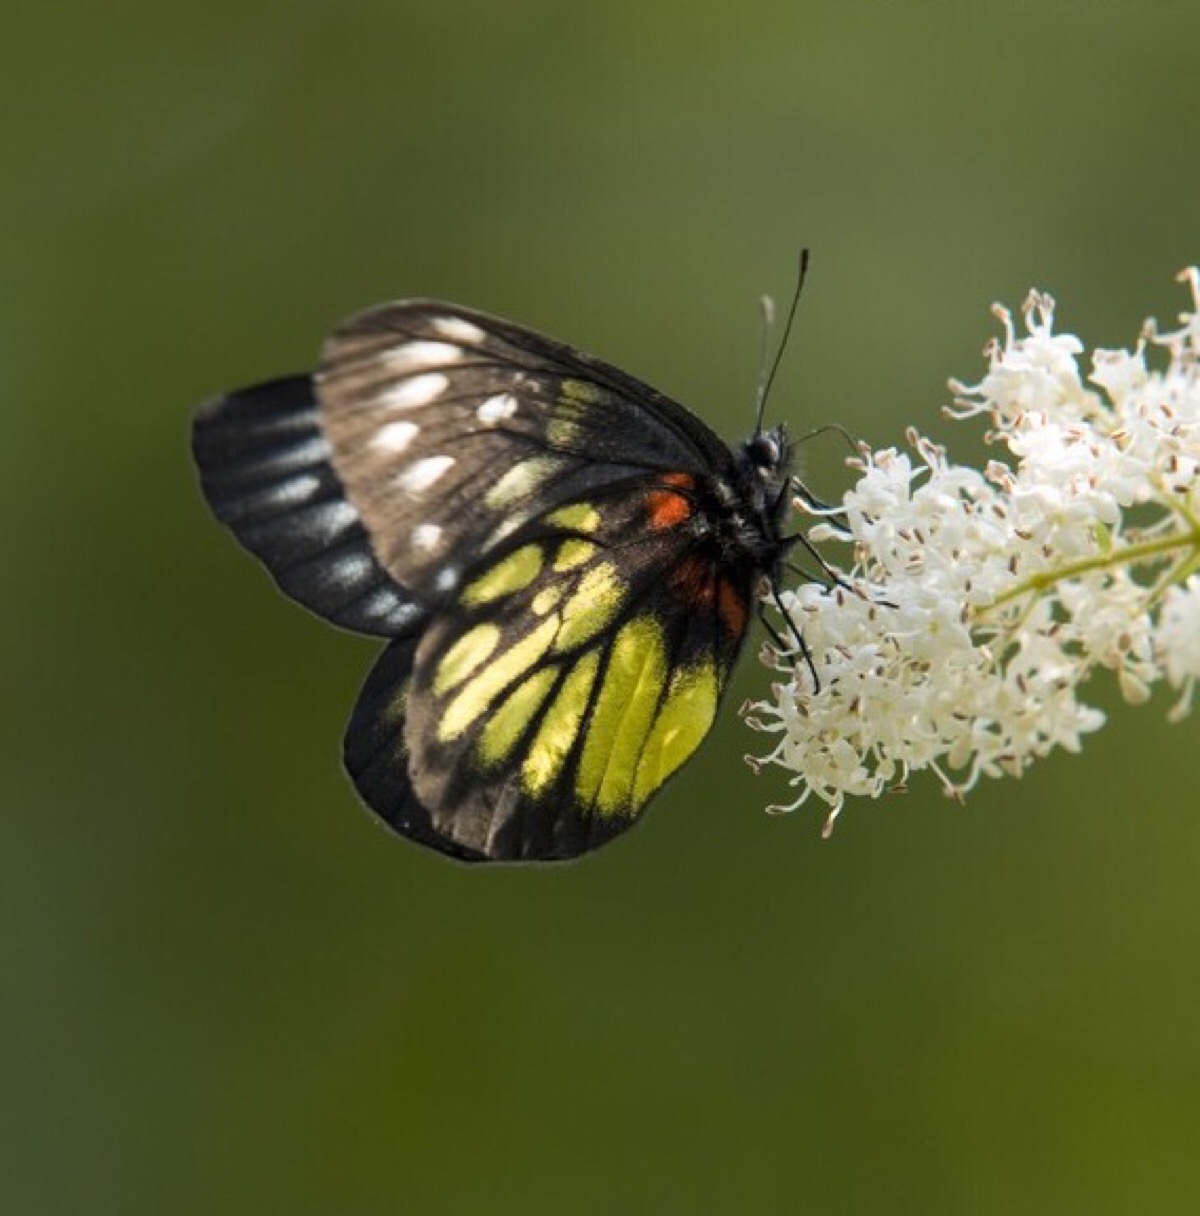 黑脉斑粉蝶(学名:delias eucharis)是一种中等个头的粉蝶科蝴蝶,生活